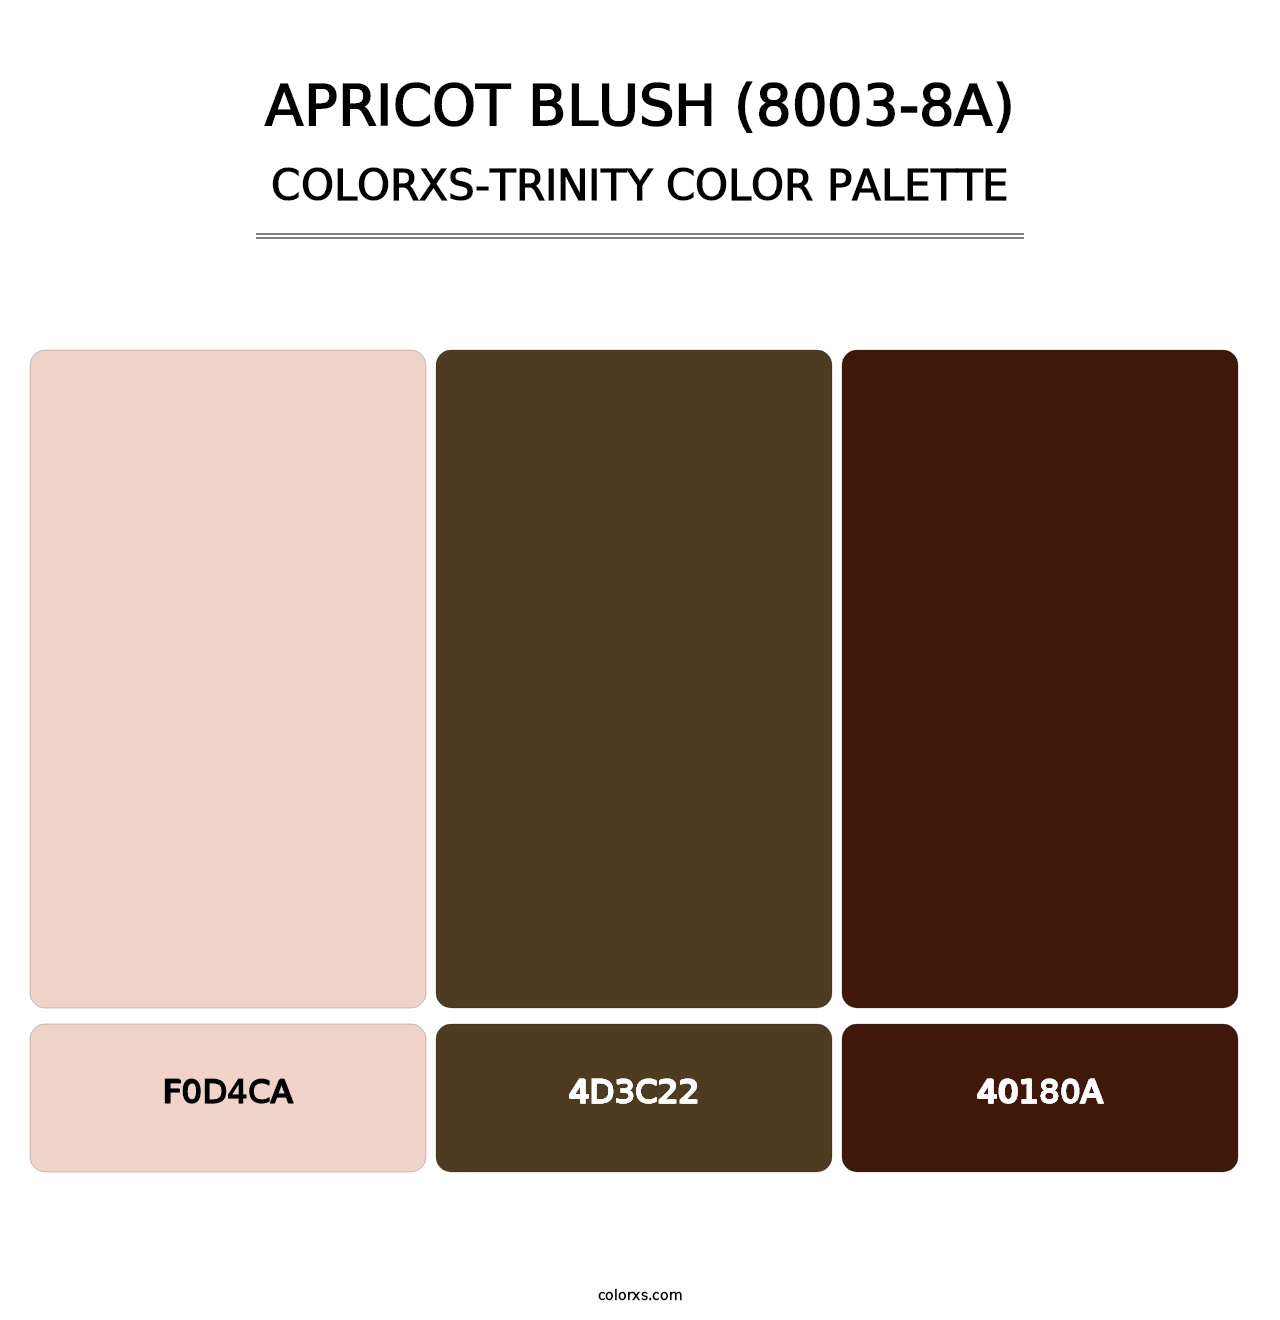 Apricot Blush (8003-8A) - Colorxs Trinity Palette